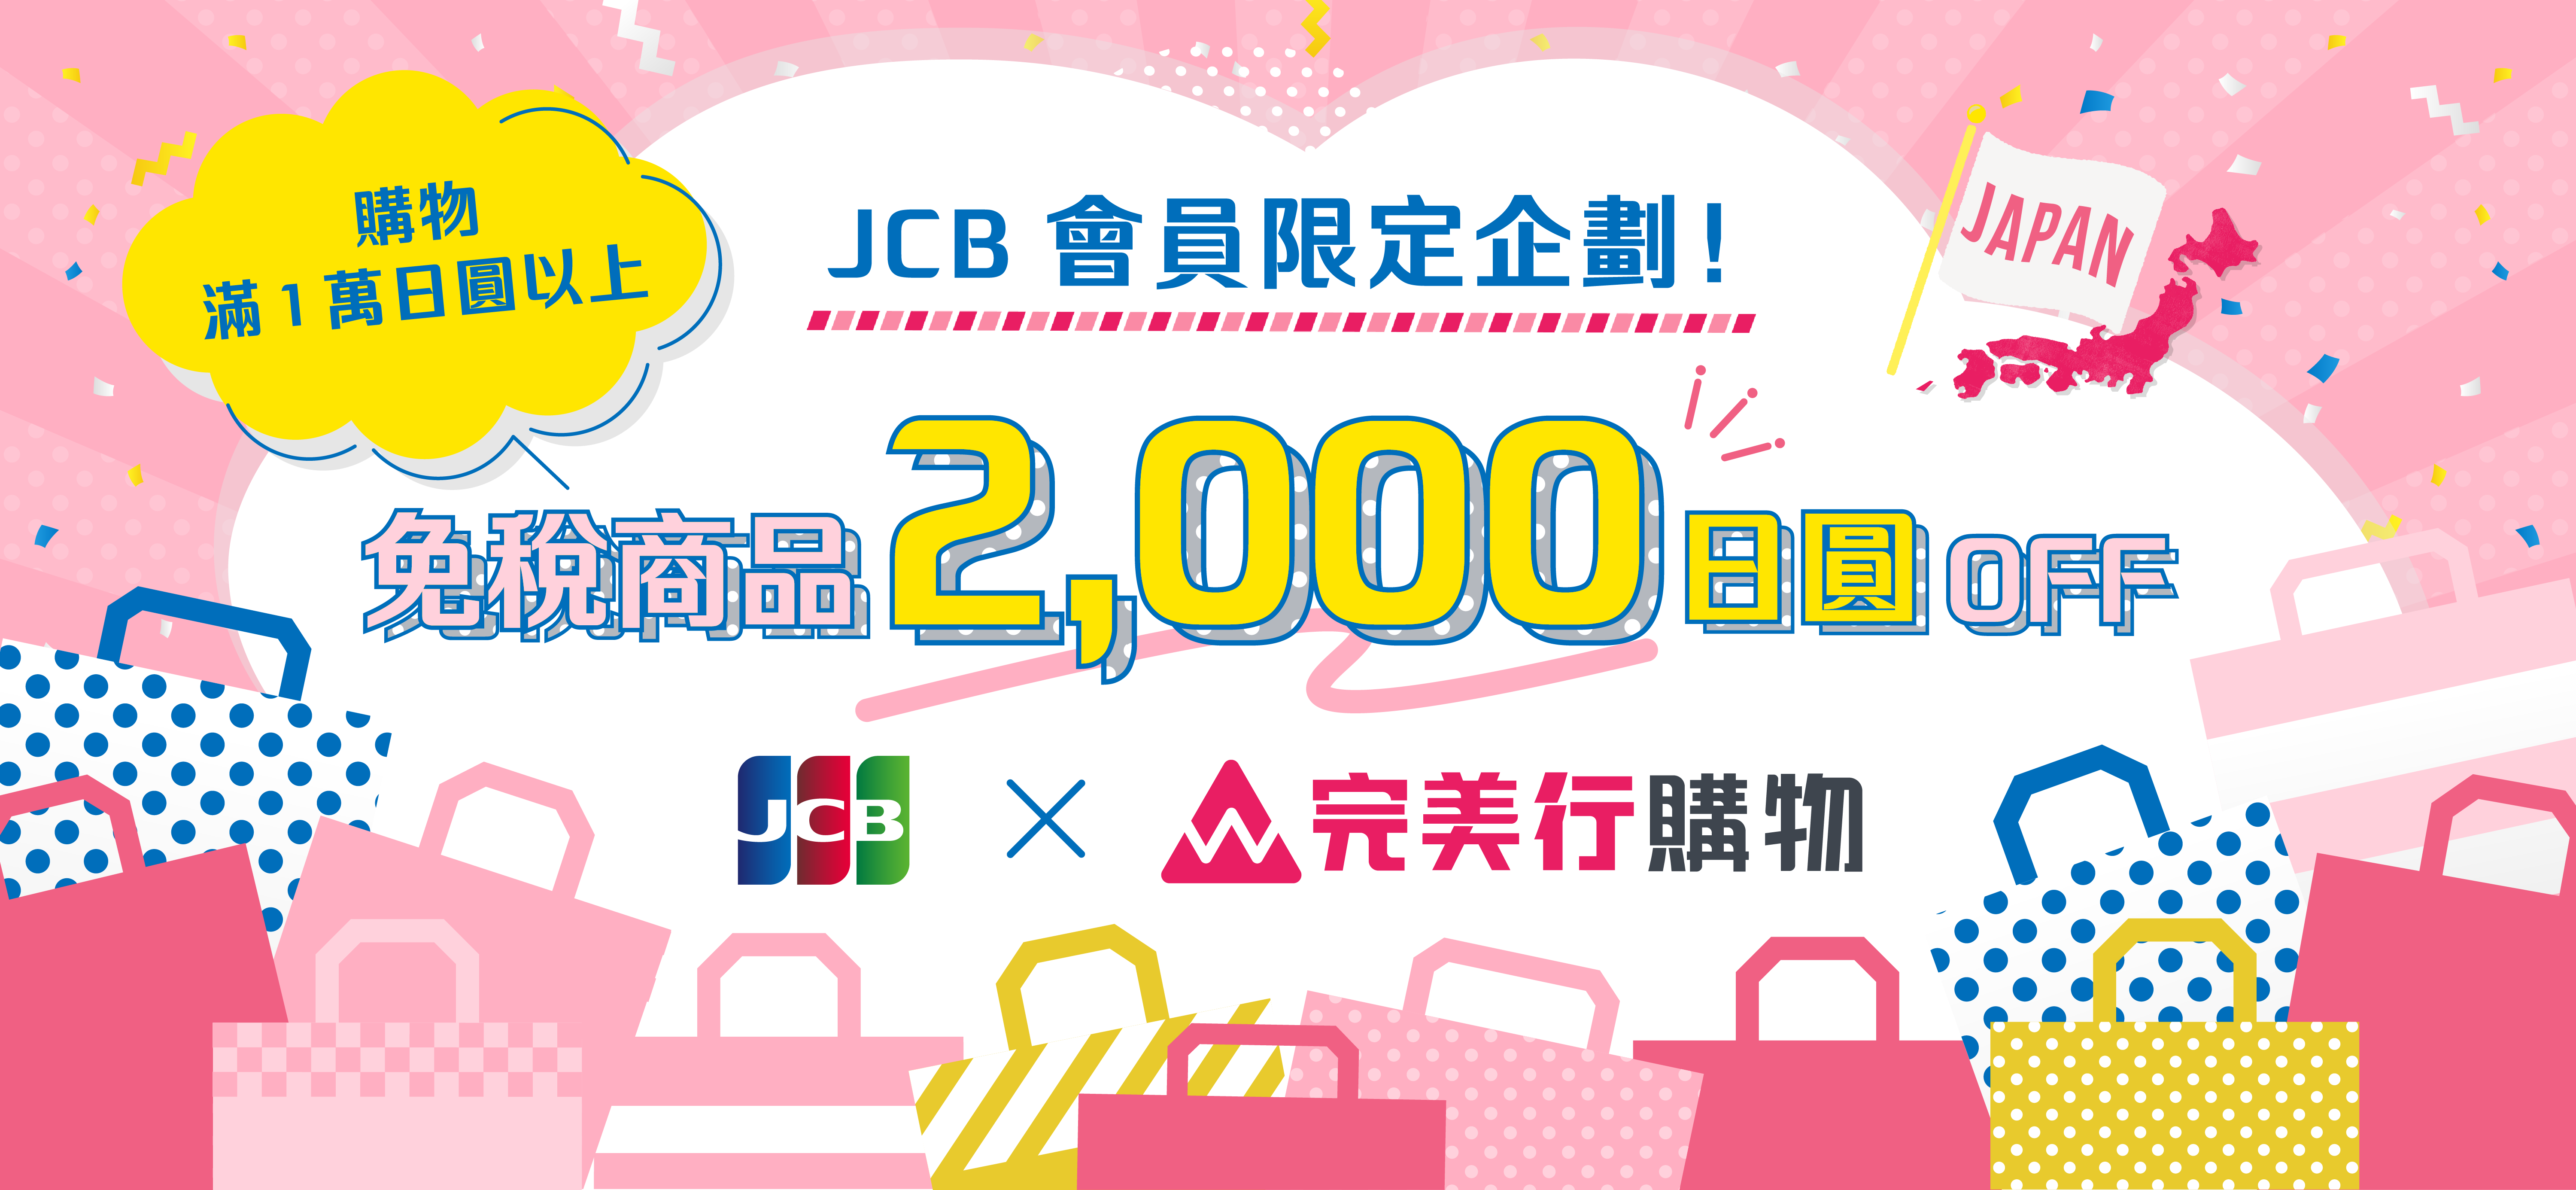 JCB會員限定企劃！只要購物1萬日圓以上，就能折抵免稅商品2,000日圓